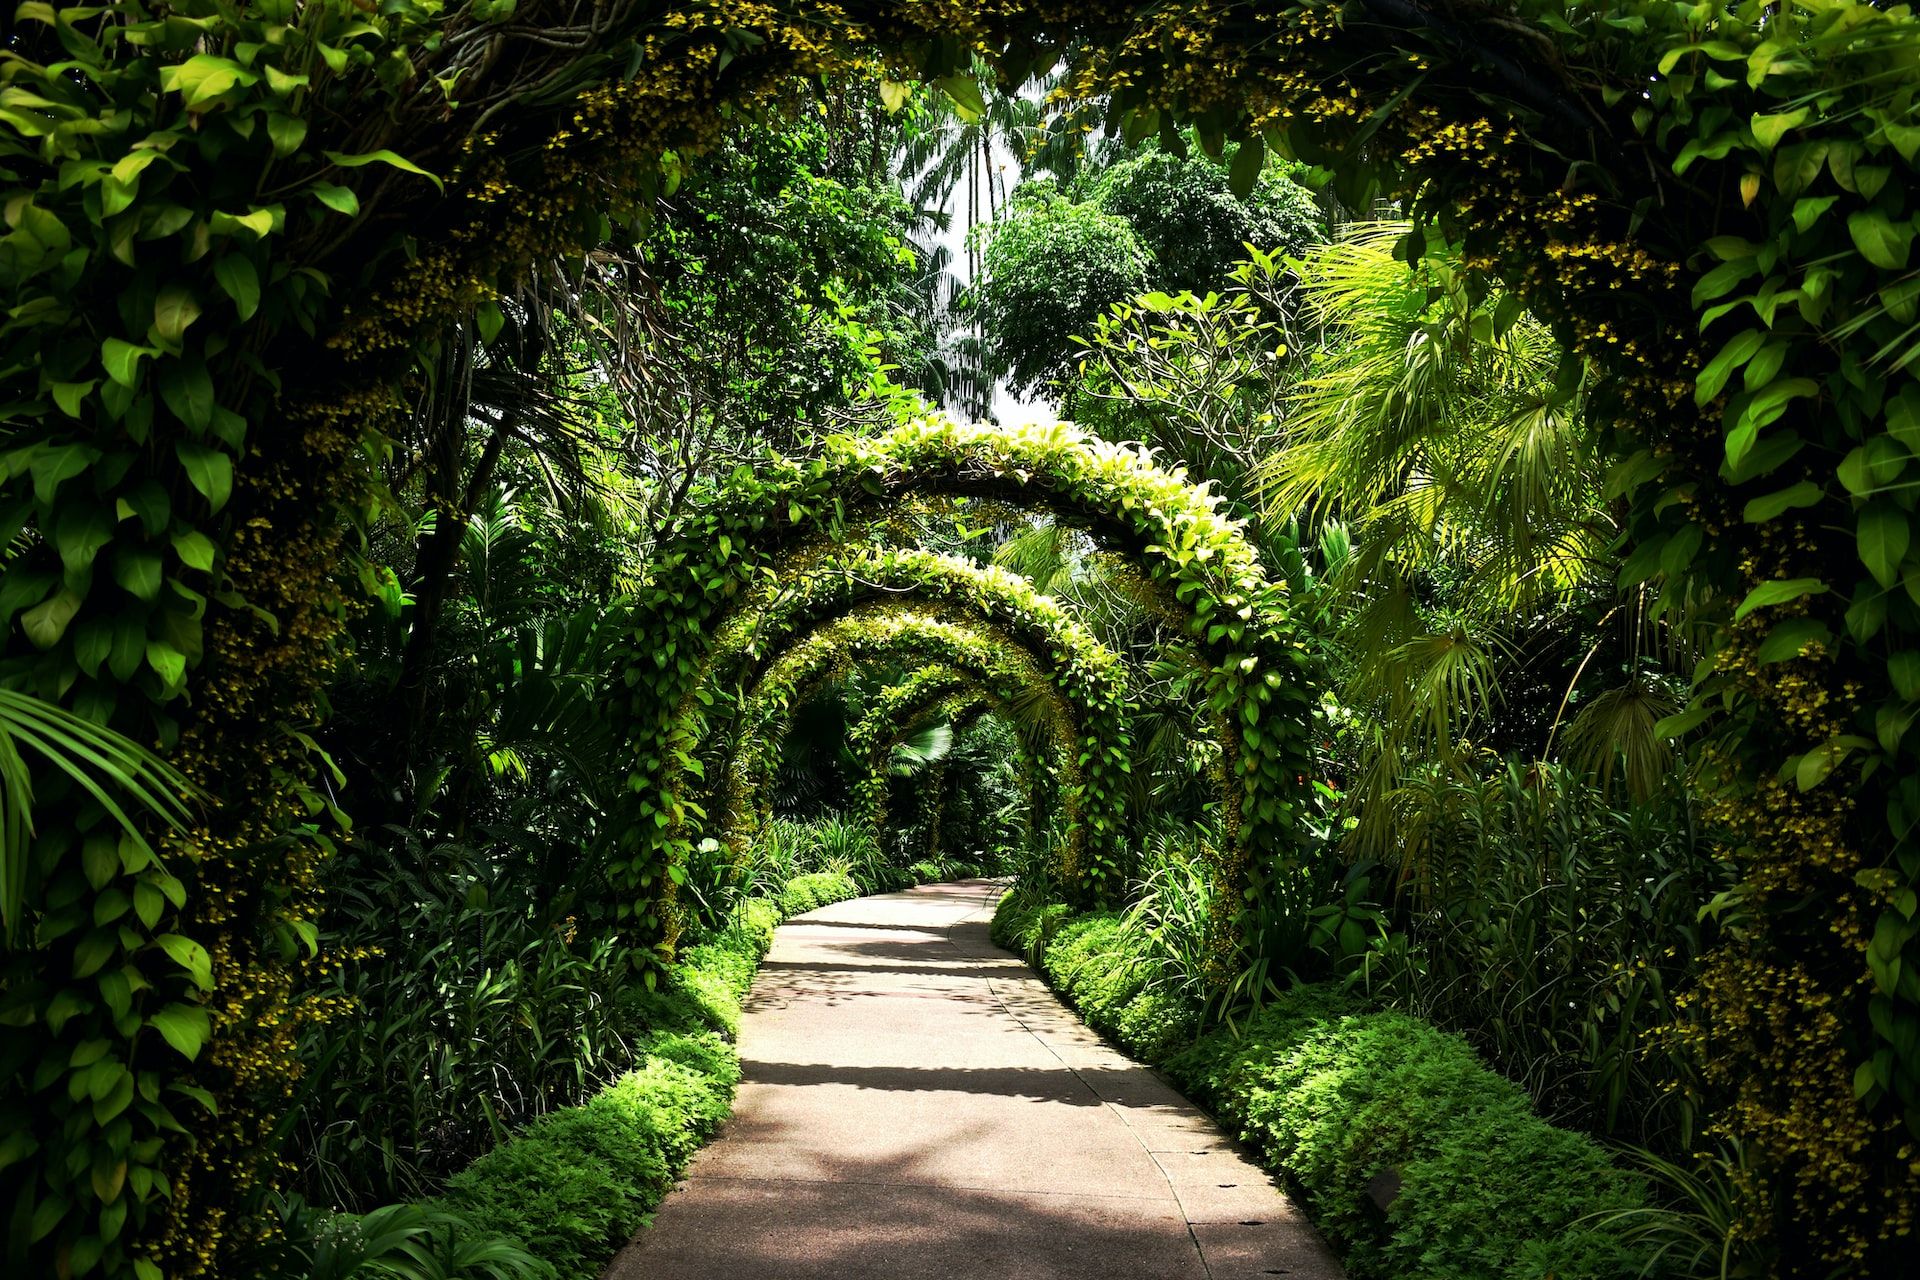 Lush botanic gardens in Singapore